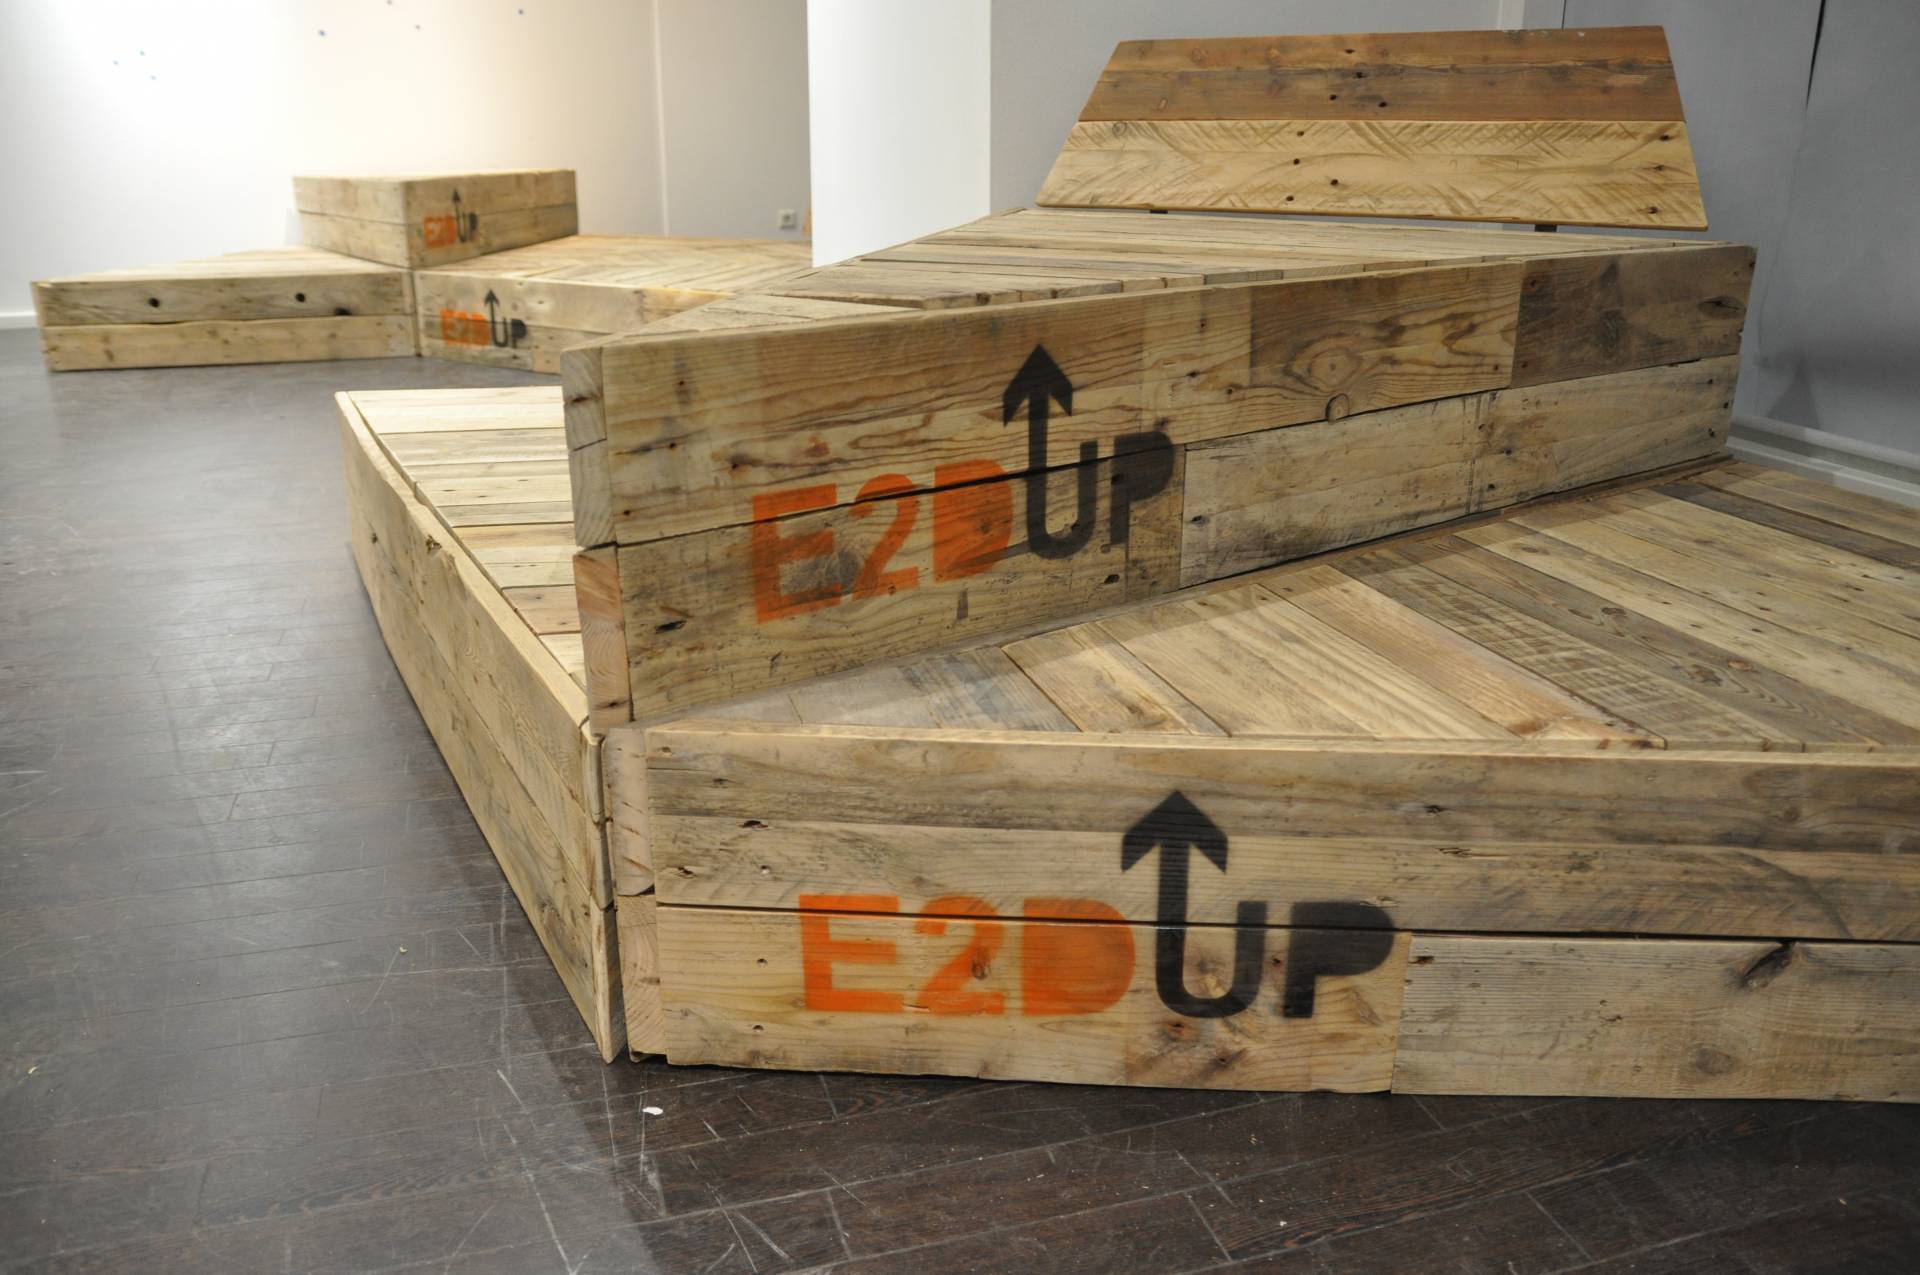 Bühnen- und Sitzelemente aus dem Holz alter Paletten (Foto: E2D-UP!)